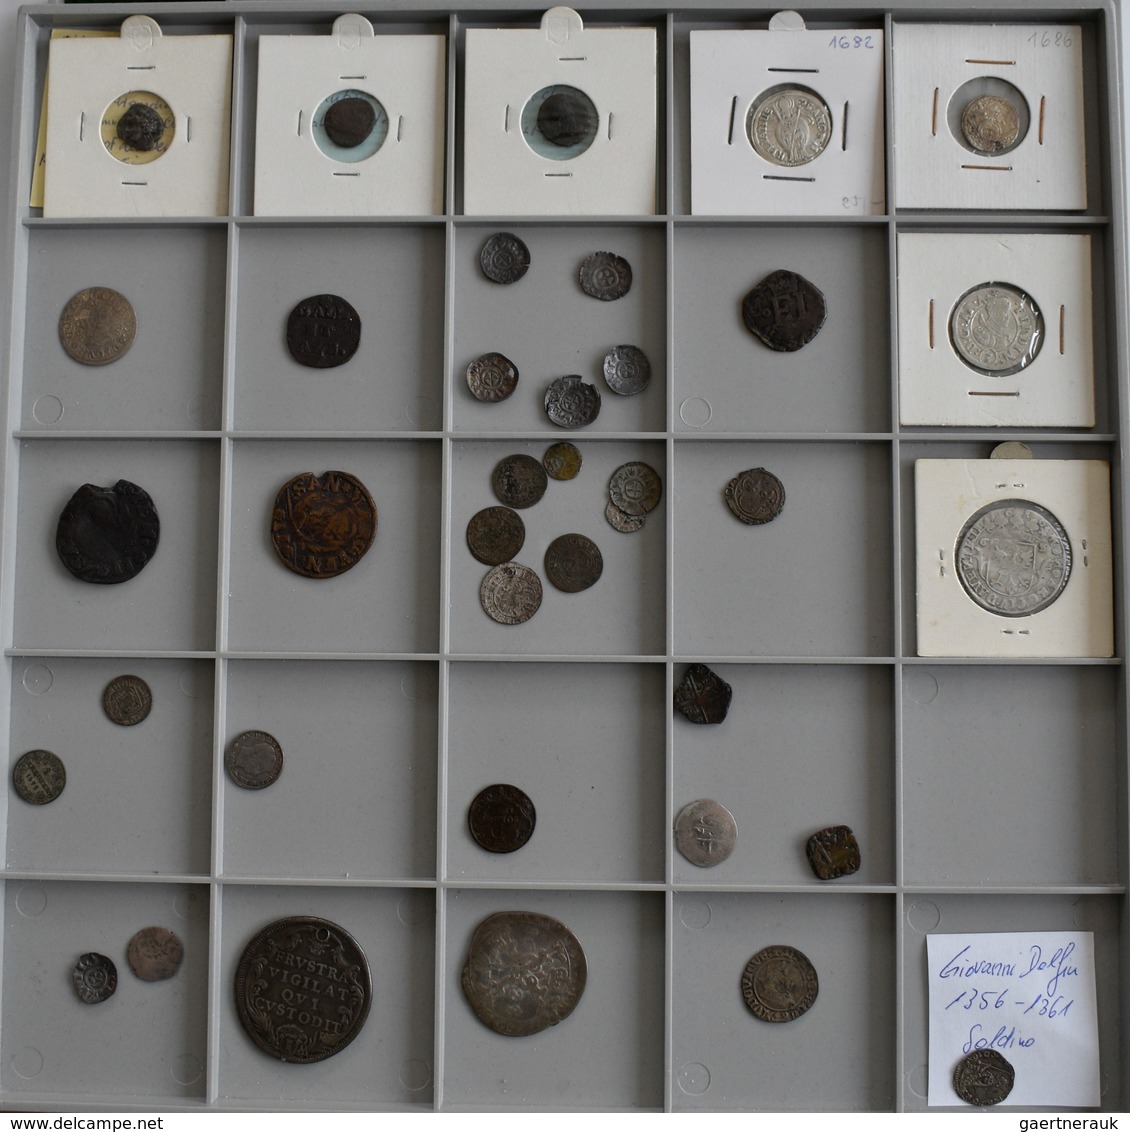 Europa: Konvolut Von Ca. 210 Silber- Und Bronzemünzen Diverser Europäischer Staaten, Beginnend Ab De - Altri – Europa